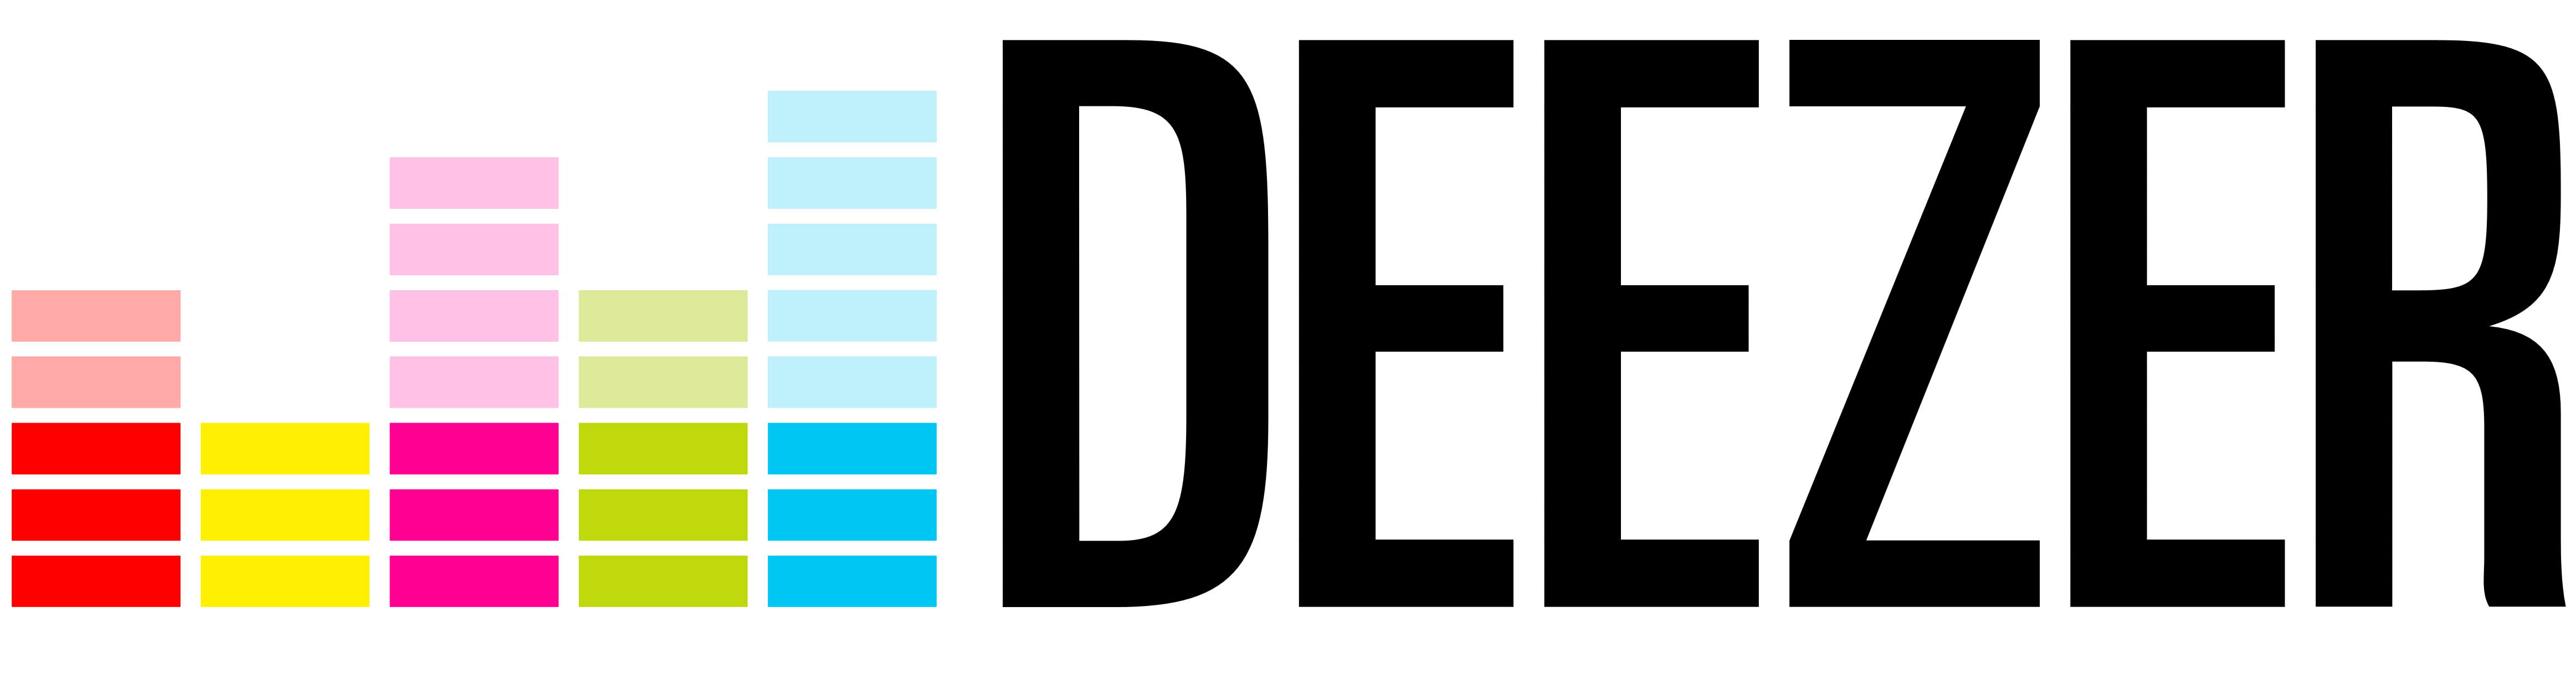 Deezer Logo Vector PNG-PlusPN